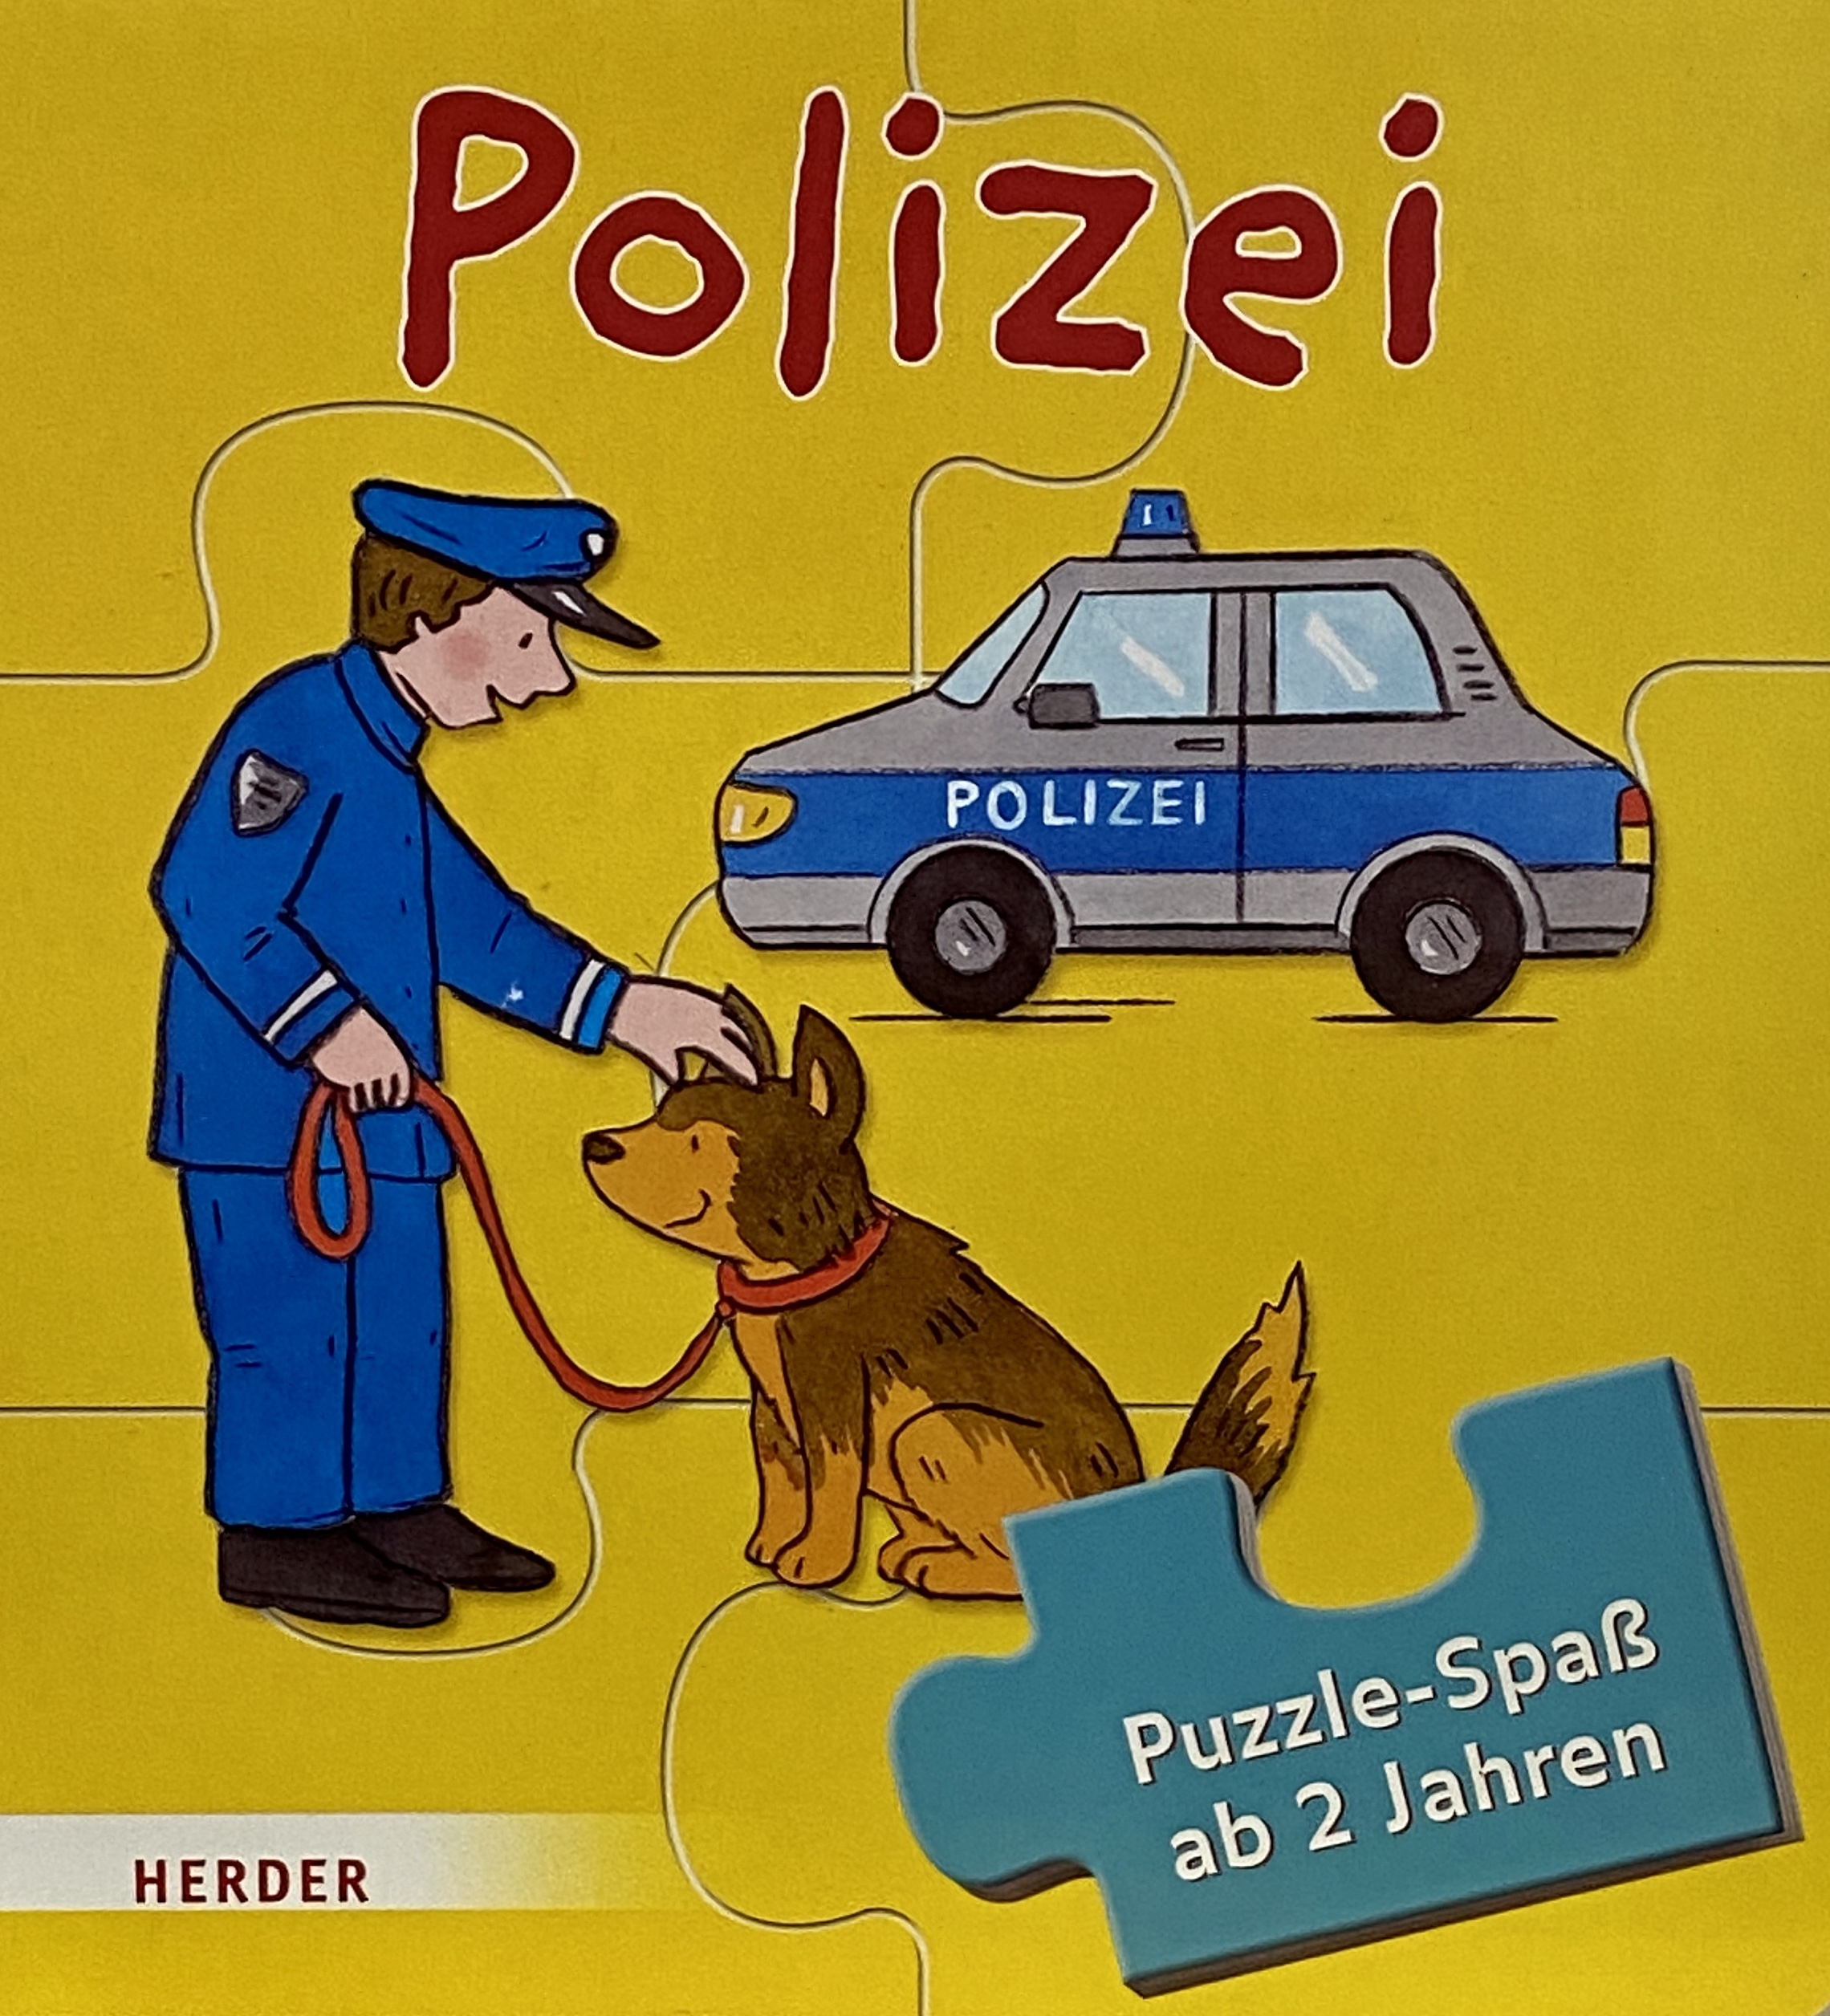 Polizei Puzzle-Spaß ab 2 Jahre